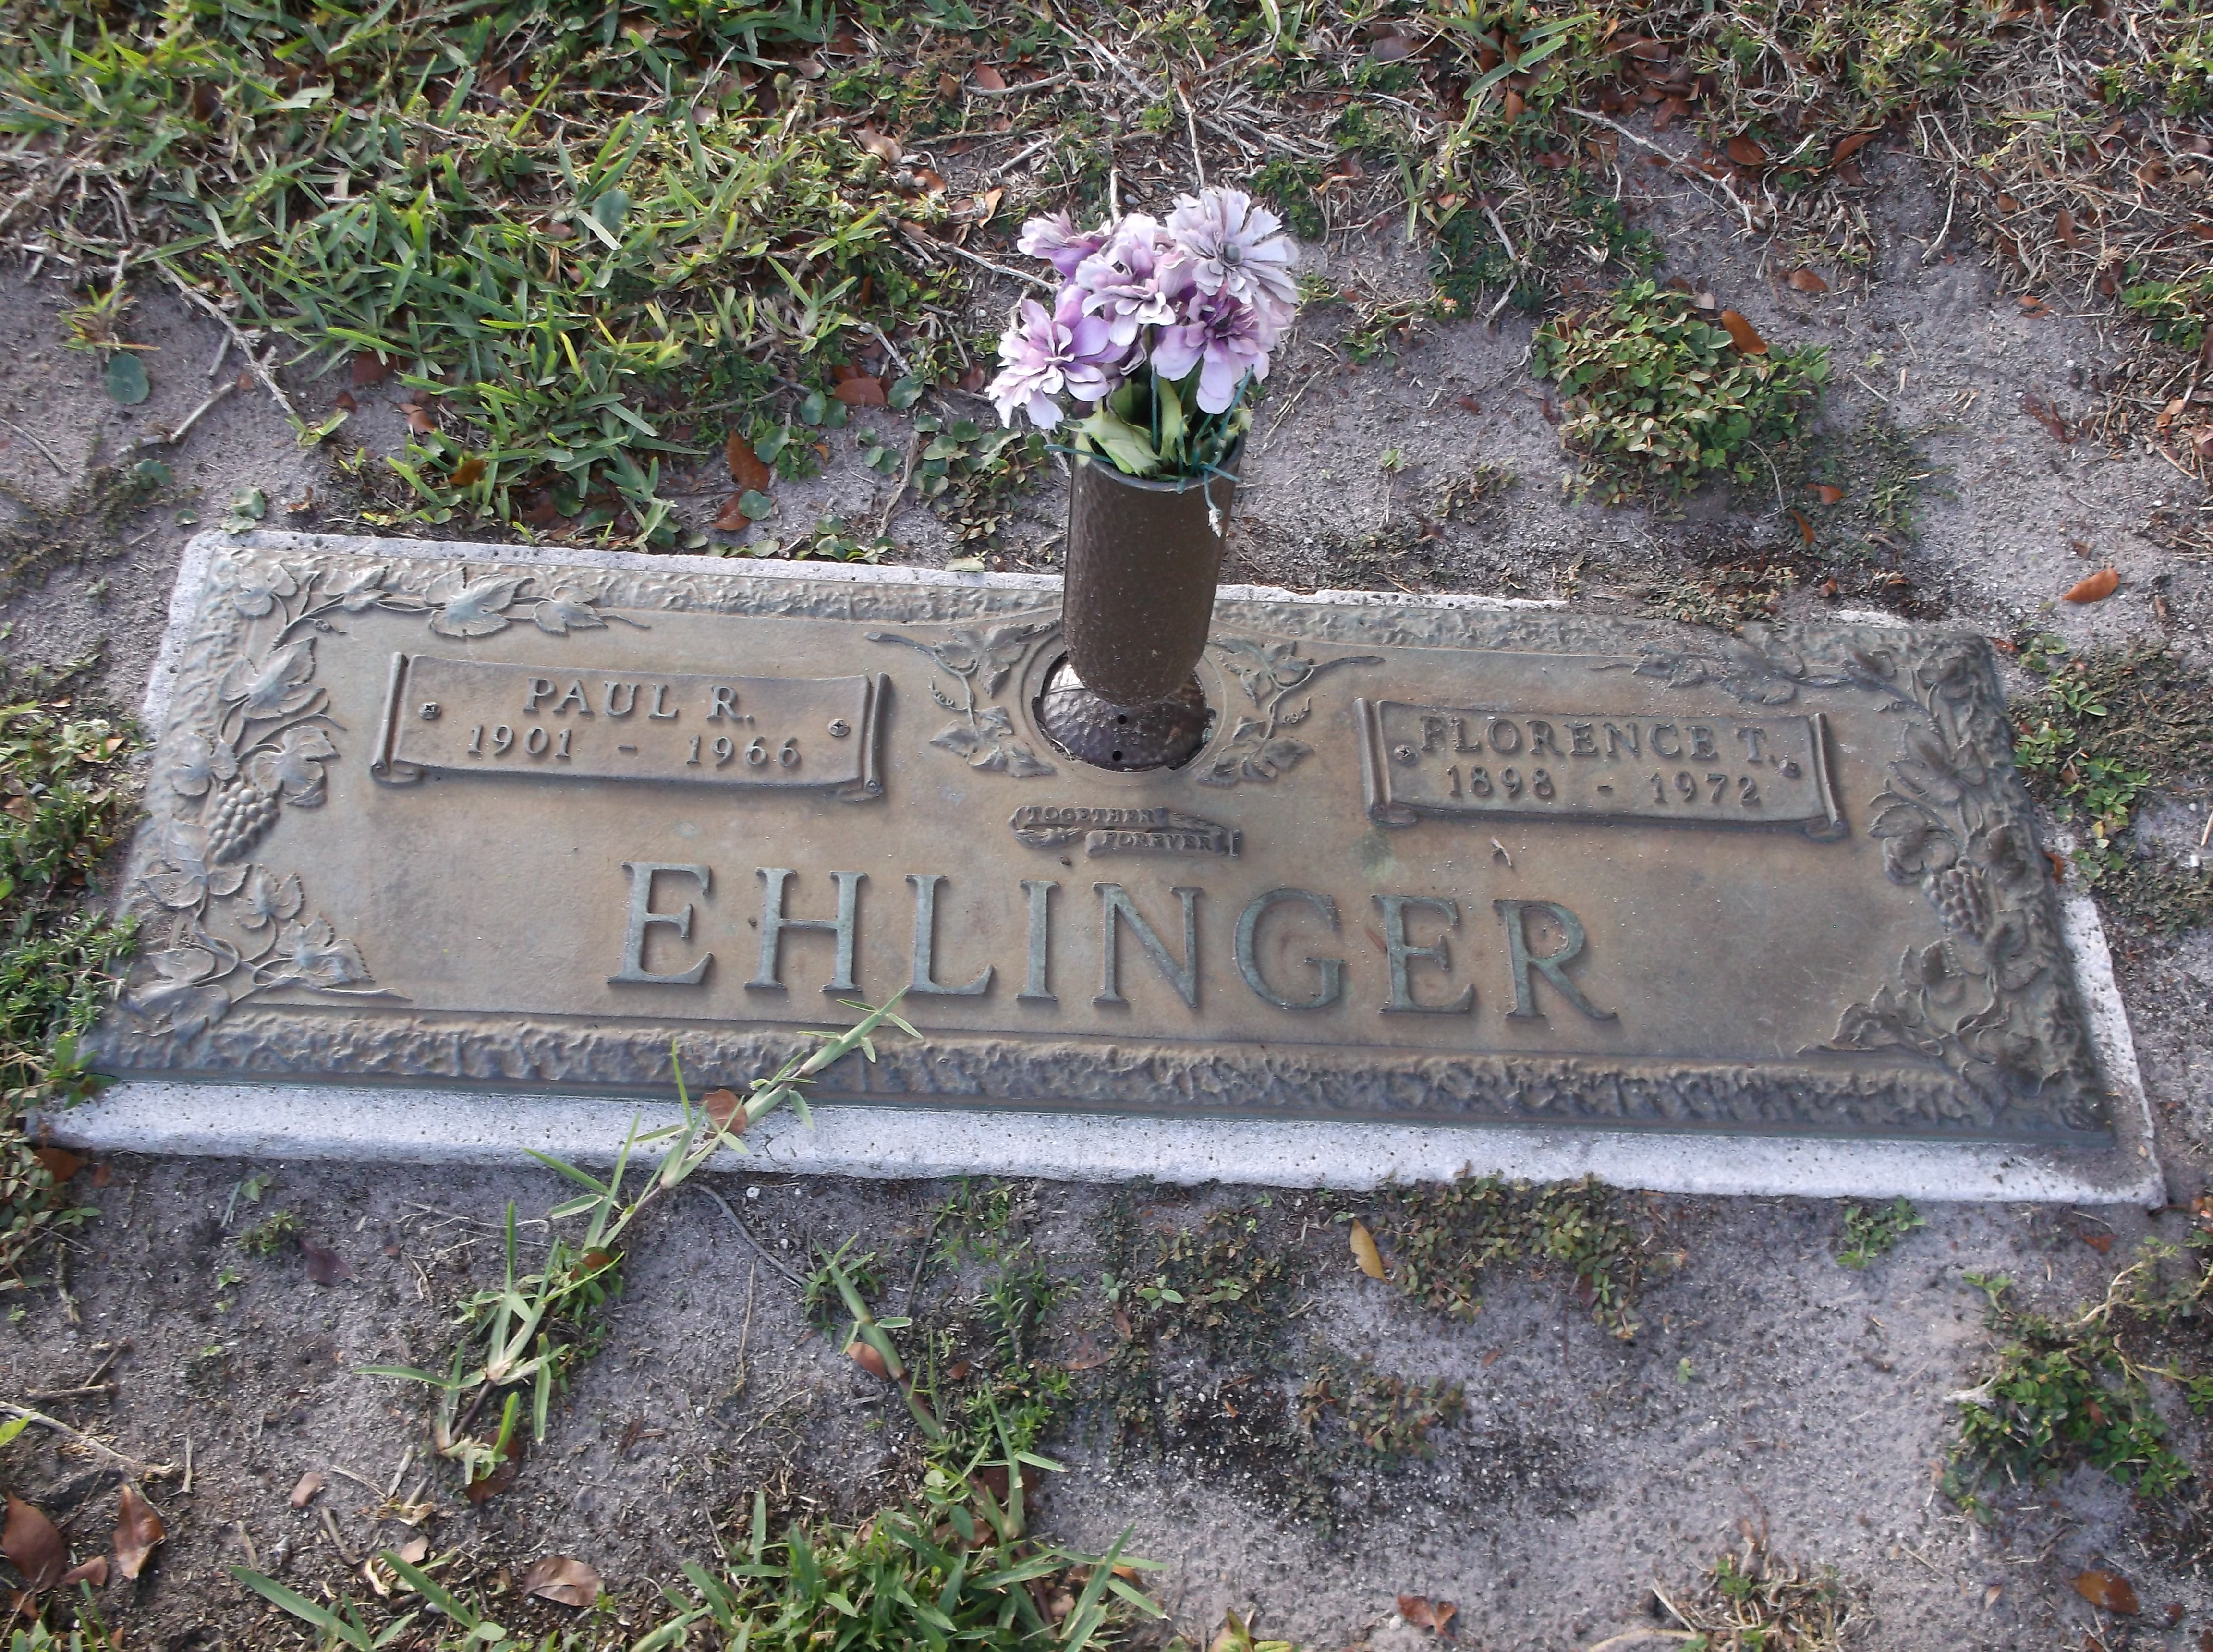 Paul R Ehlinger